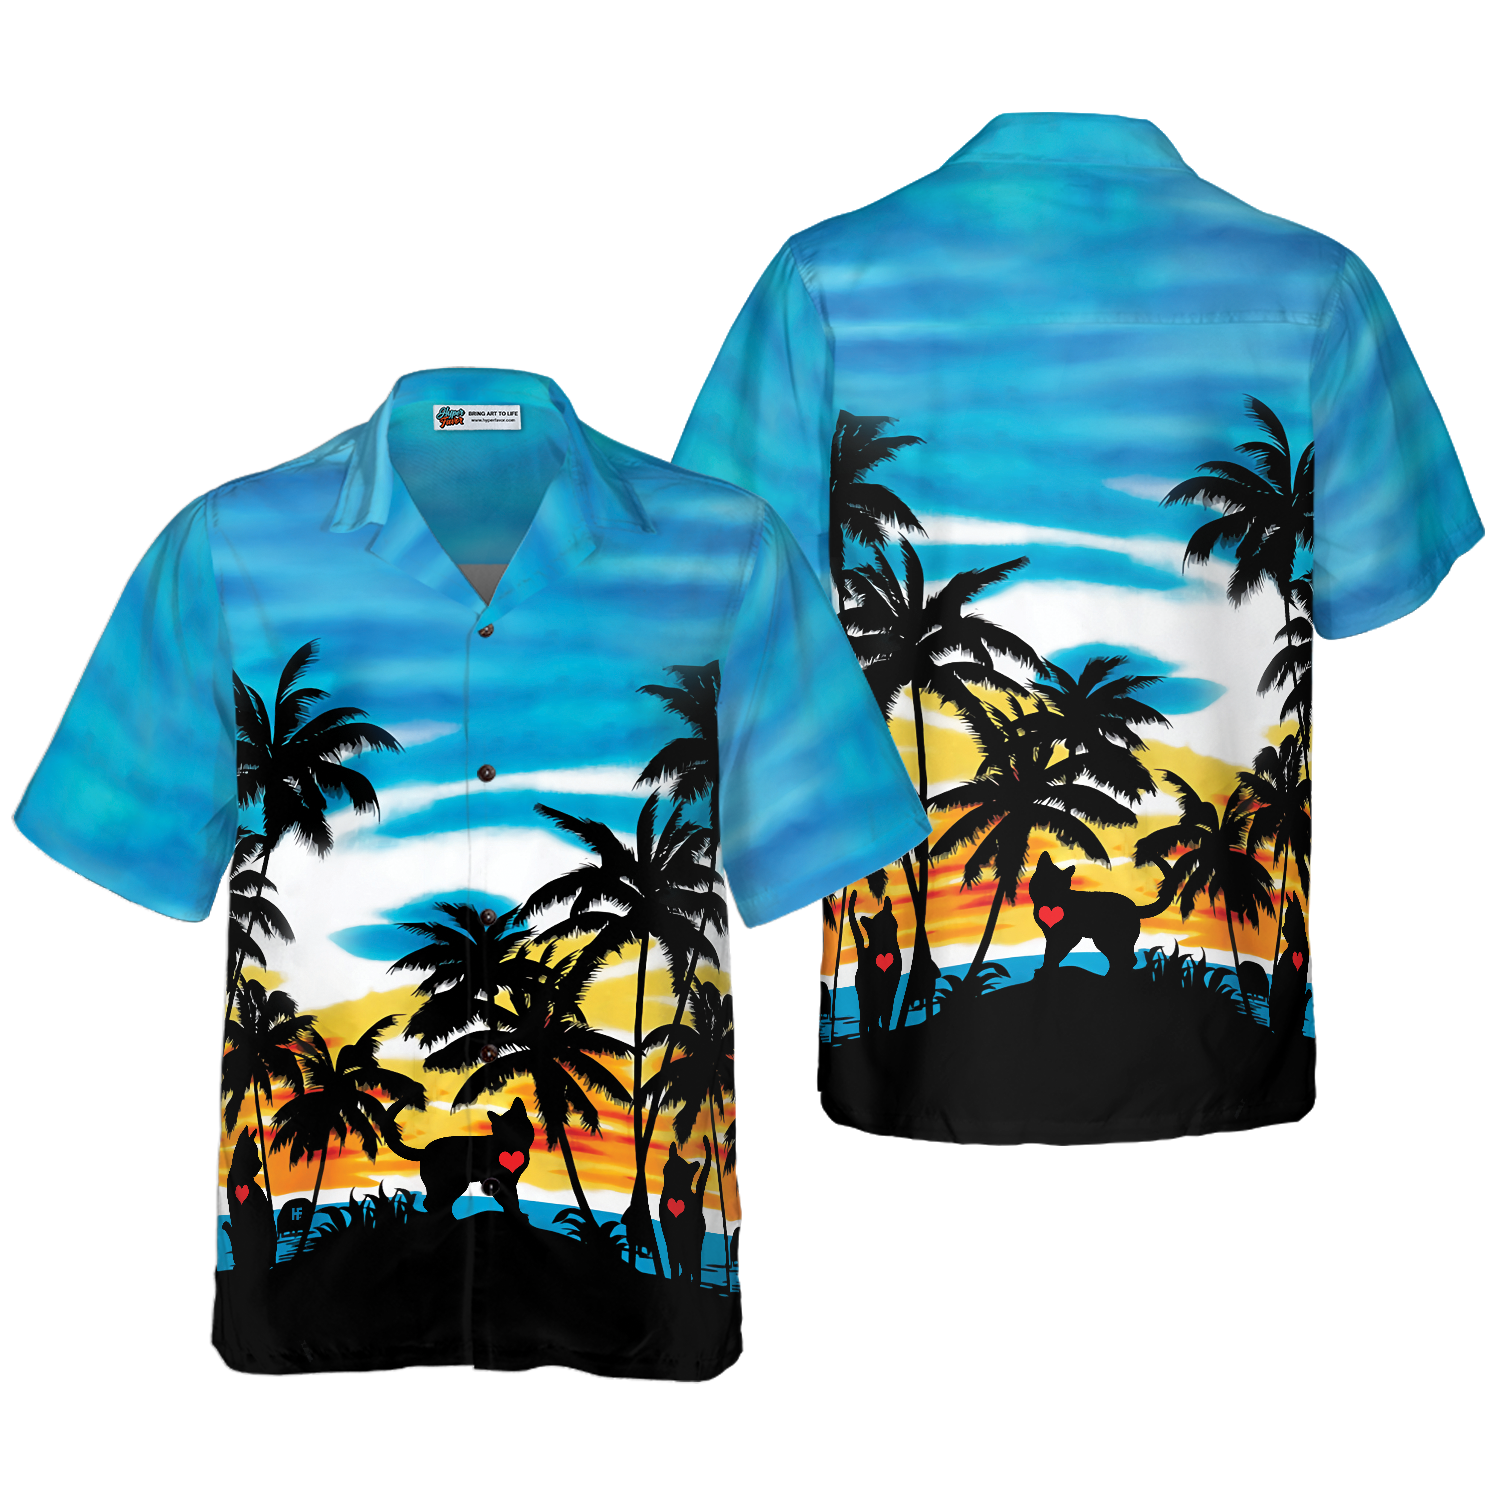 Cat Love Sunset Hawaiian Shirt, Best Gift For Cat Lover, Husband, Wife, Boyfriend, Girlfriend, Friend, Family